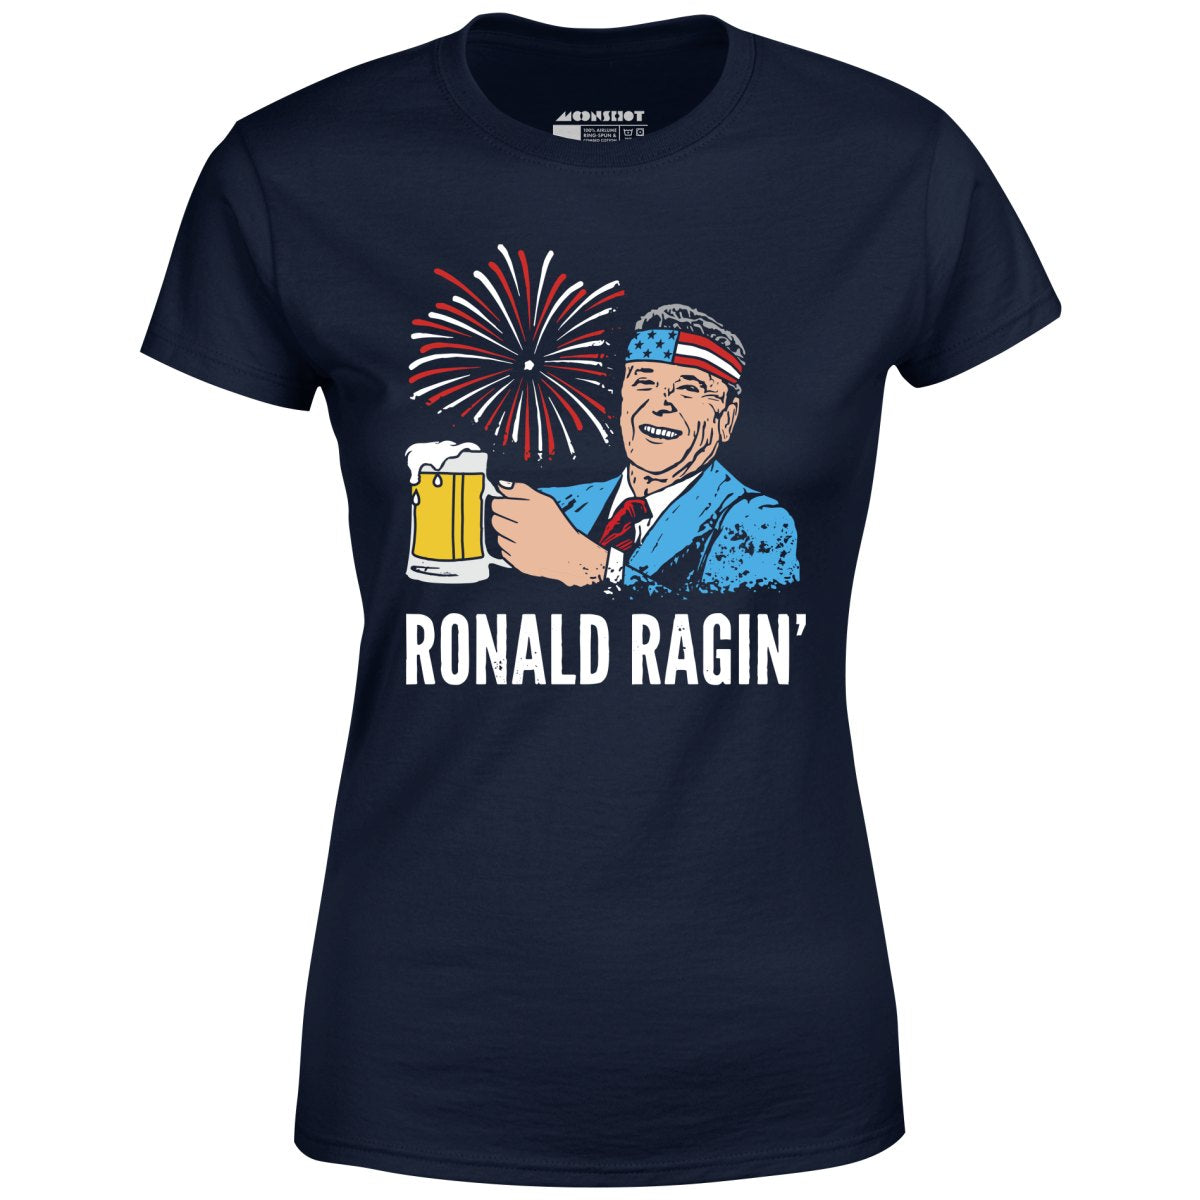 Ronald Ragin' - Women's T-Shirt